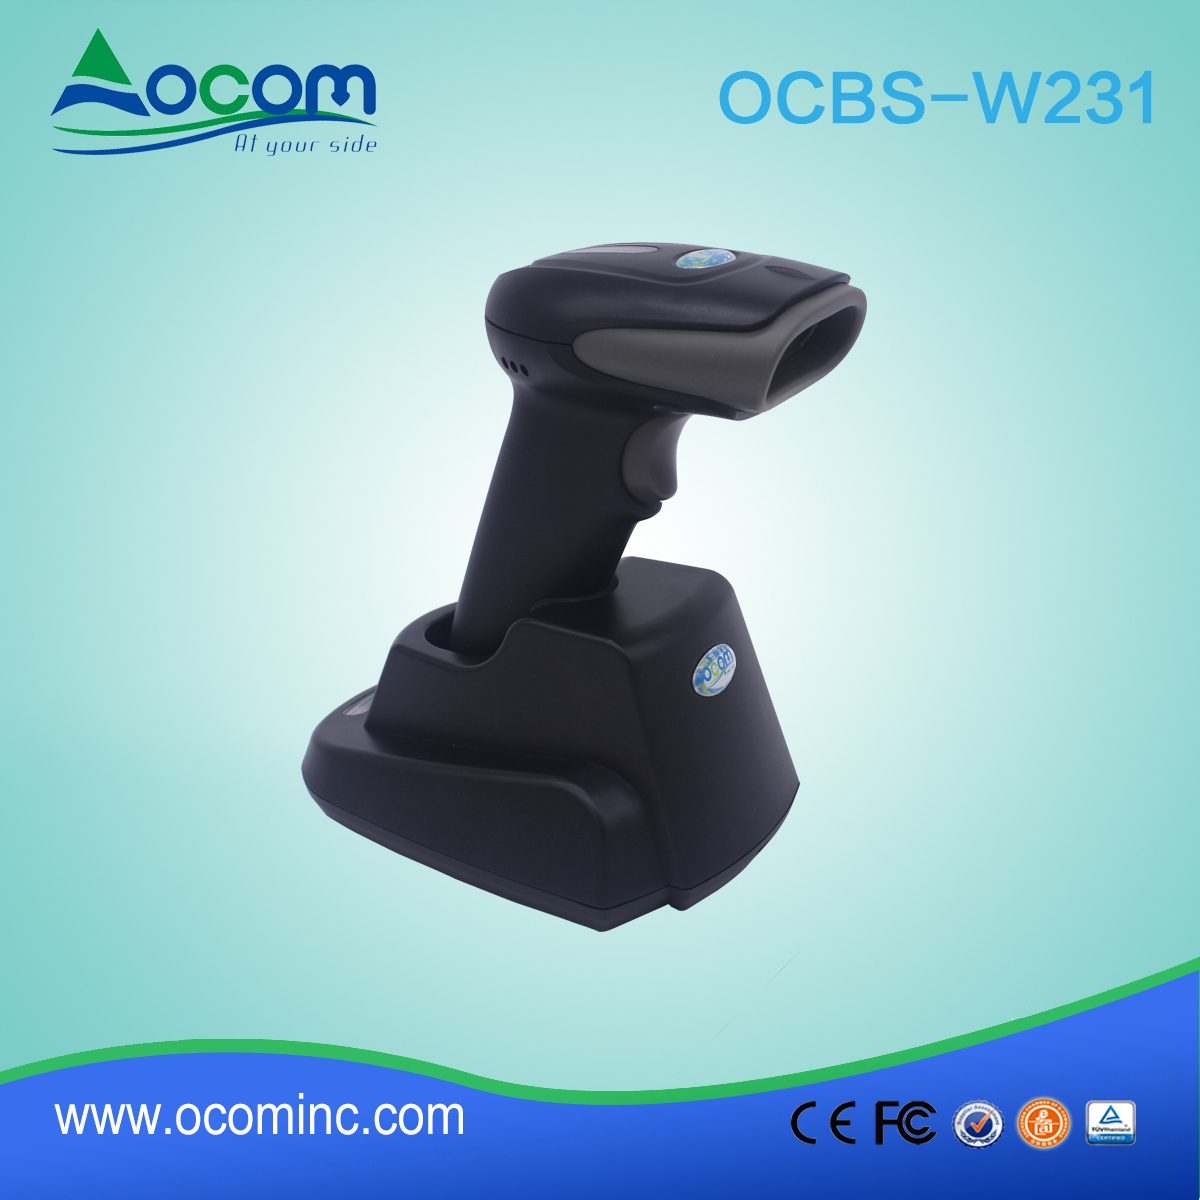 ОКБС-в231 высокоскоростной микроusb-сканер штрих-кода Bluetooth